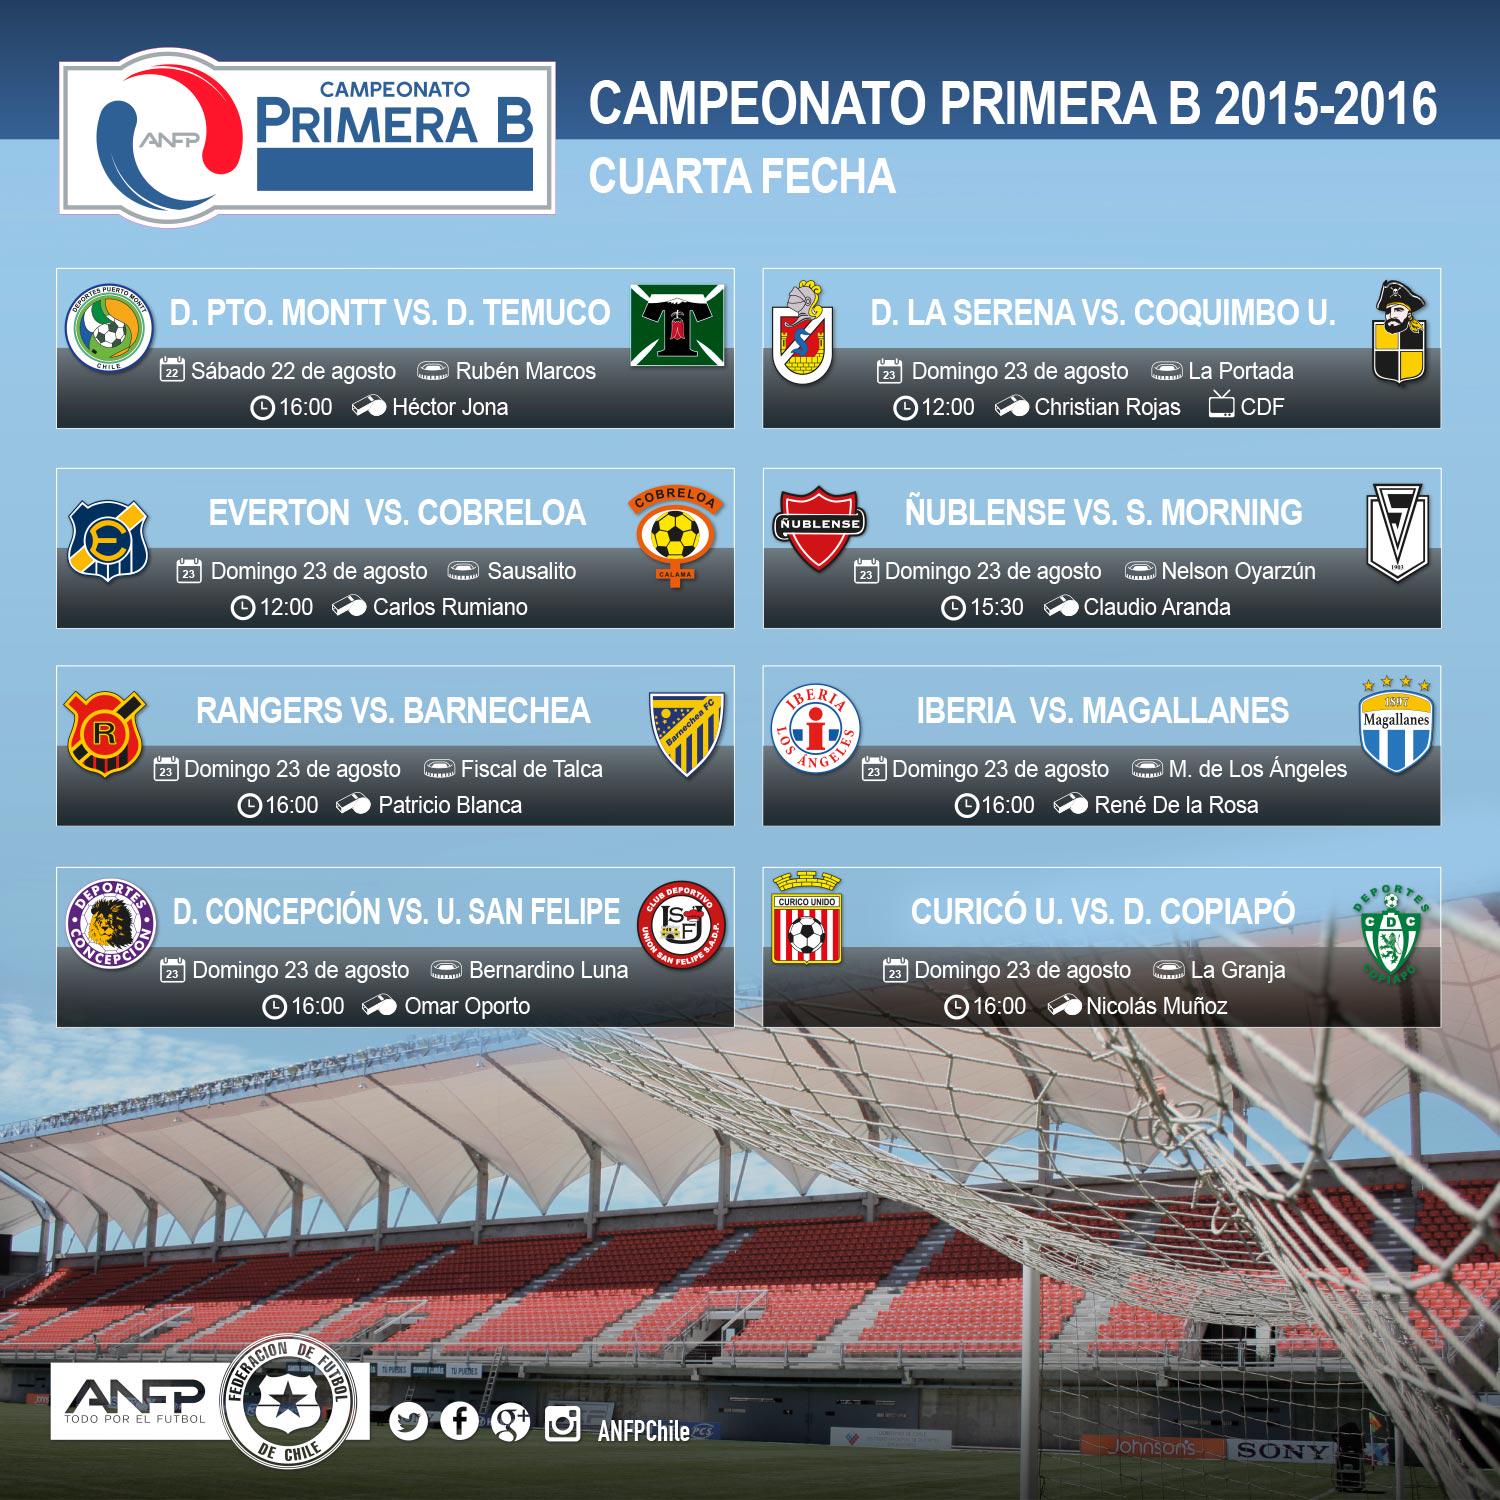 ANFP on "Esta sábado comienza la cuarta fecha del Campeonato #PrimeraB 2015-2016. Revisa el calendario de partidos. / Twitter